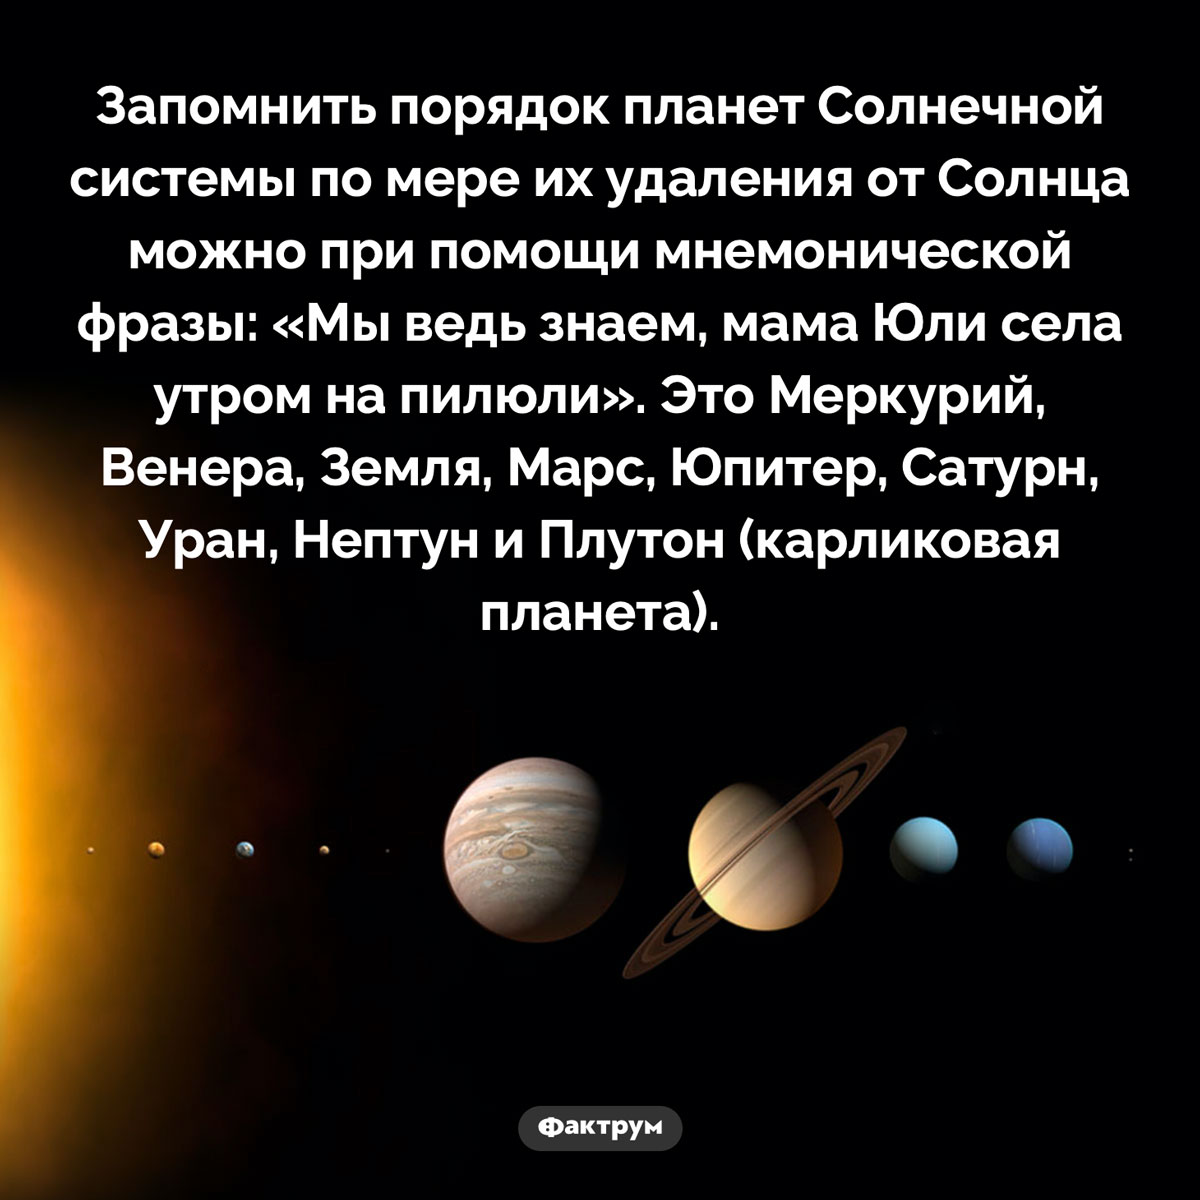 Как запомнить порядок планет Солнечной системы. Запомнить порядок планет Солнечной системы по мере их удаления от Солнца можно при помощи мнемонической фразы: «Мы ведь знаем, мама Юли села утром на пилюли». Это Меркурий, Венера, Земля, Марс, Юпитер, Сатурн, Уран, Нептун и Плутон (карликовая планета).